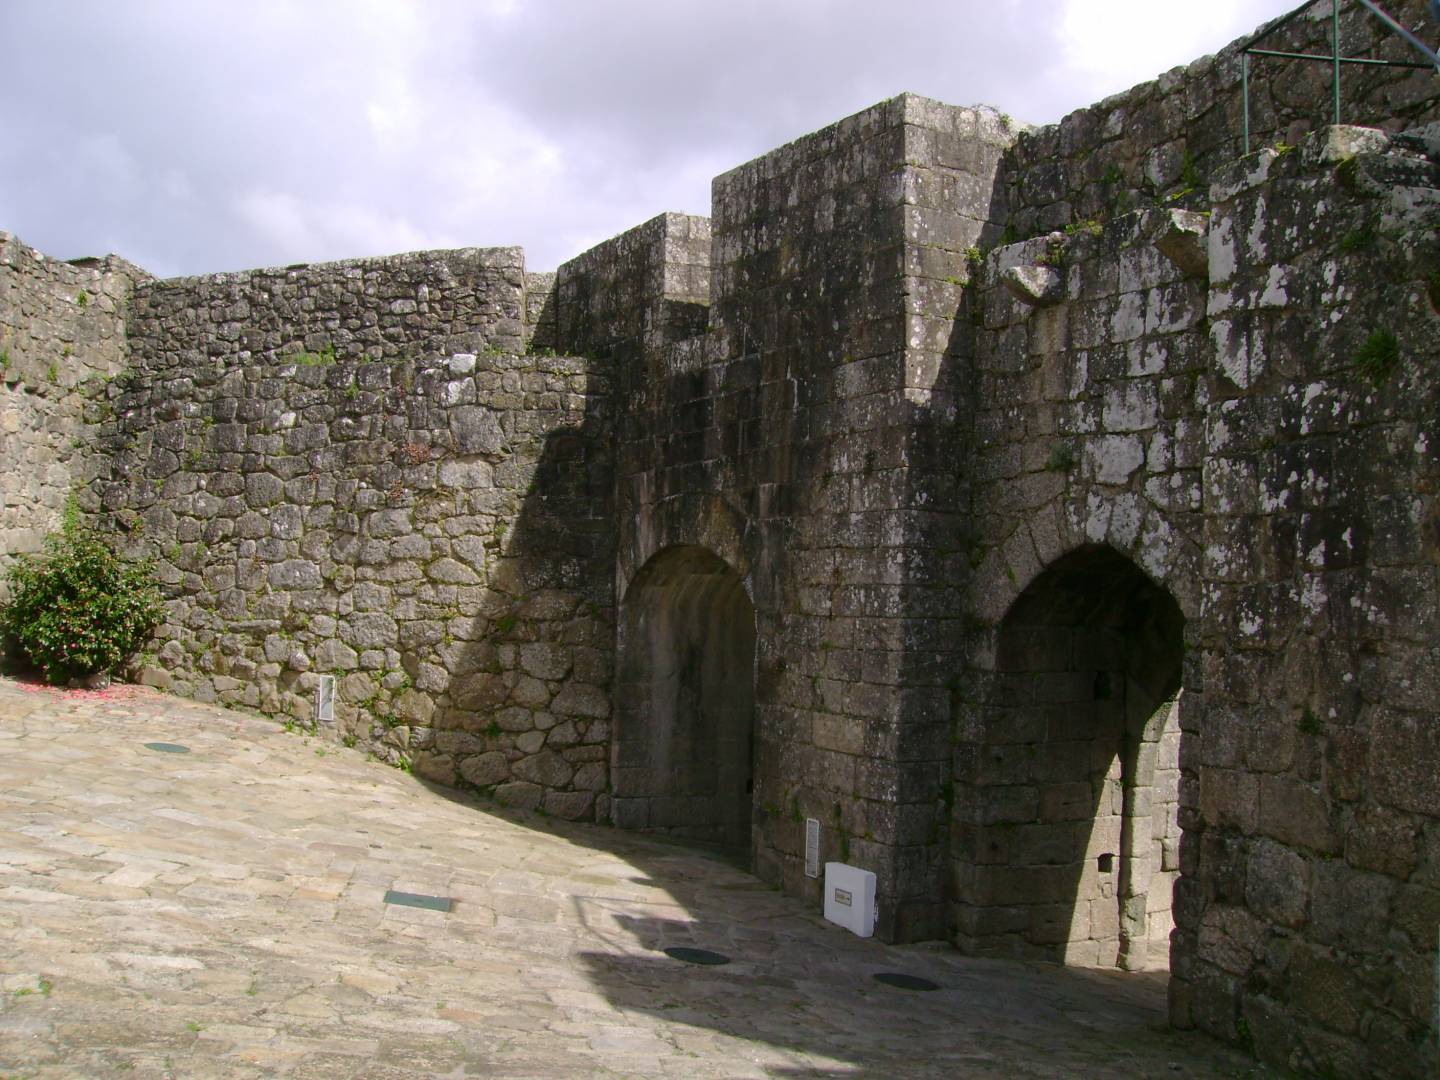 Núcleo Intra-muros de Vila Nova de Cerveira